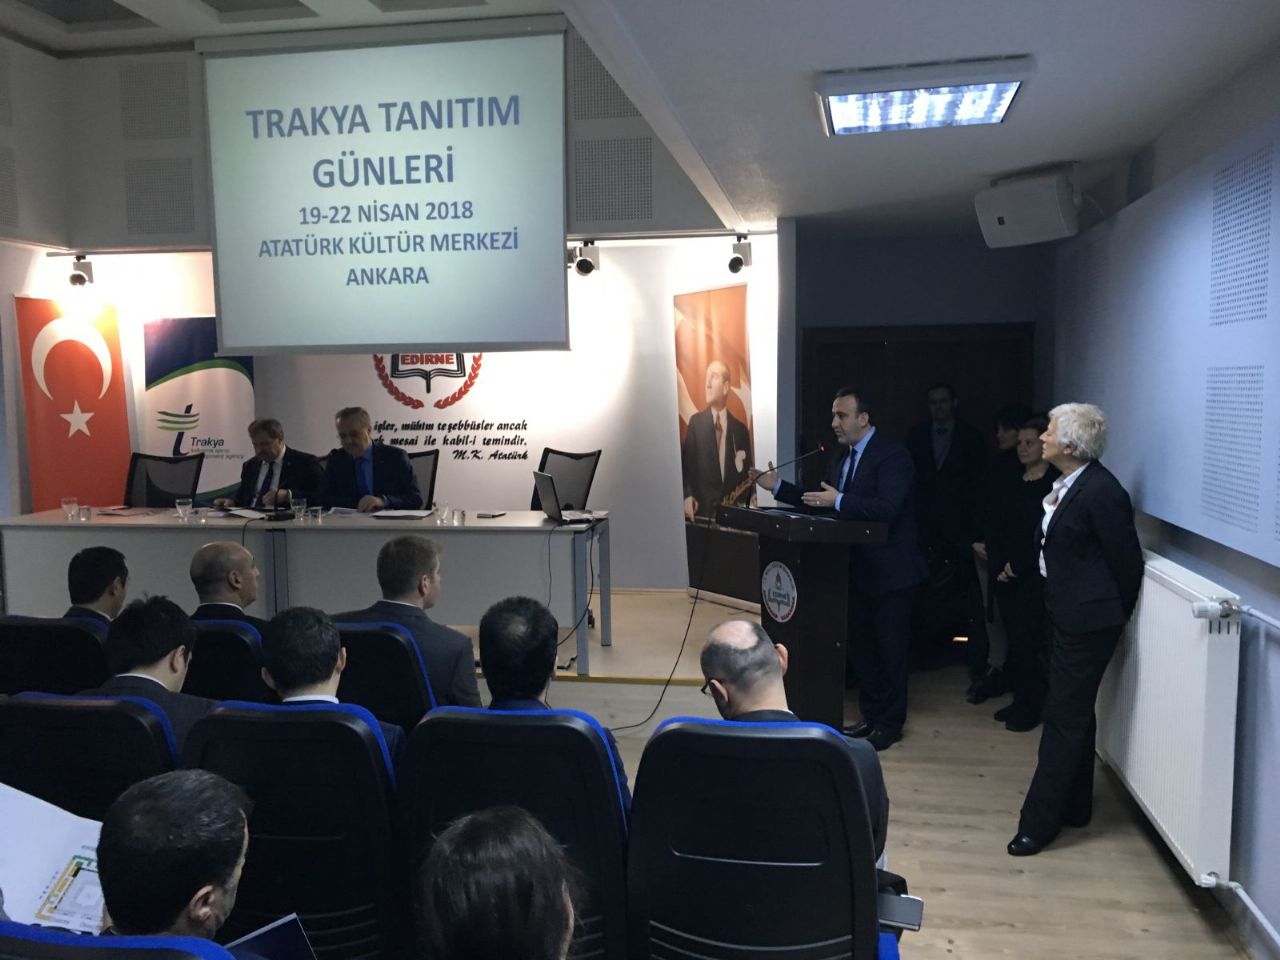 Trakya Tanıtım Günleri Hazırlık Toplantılarının Sonuncusu Edirne’de Yapıldı